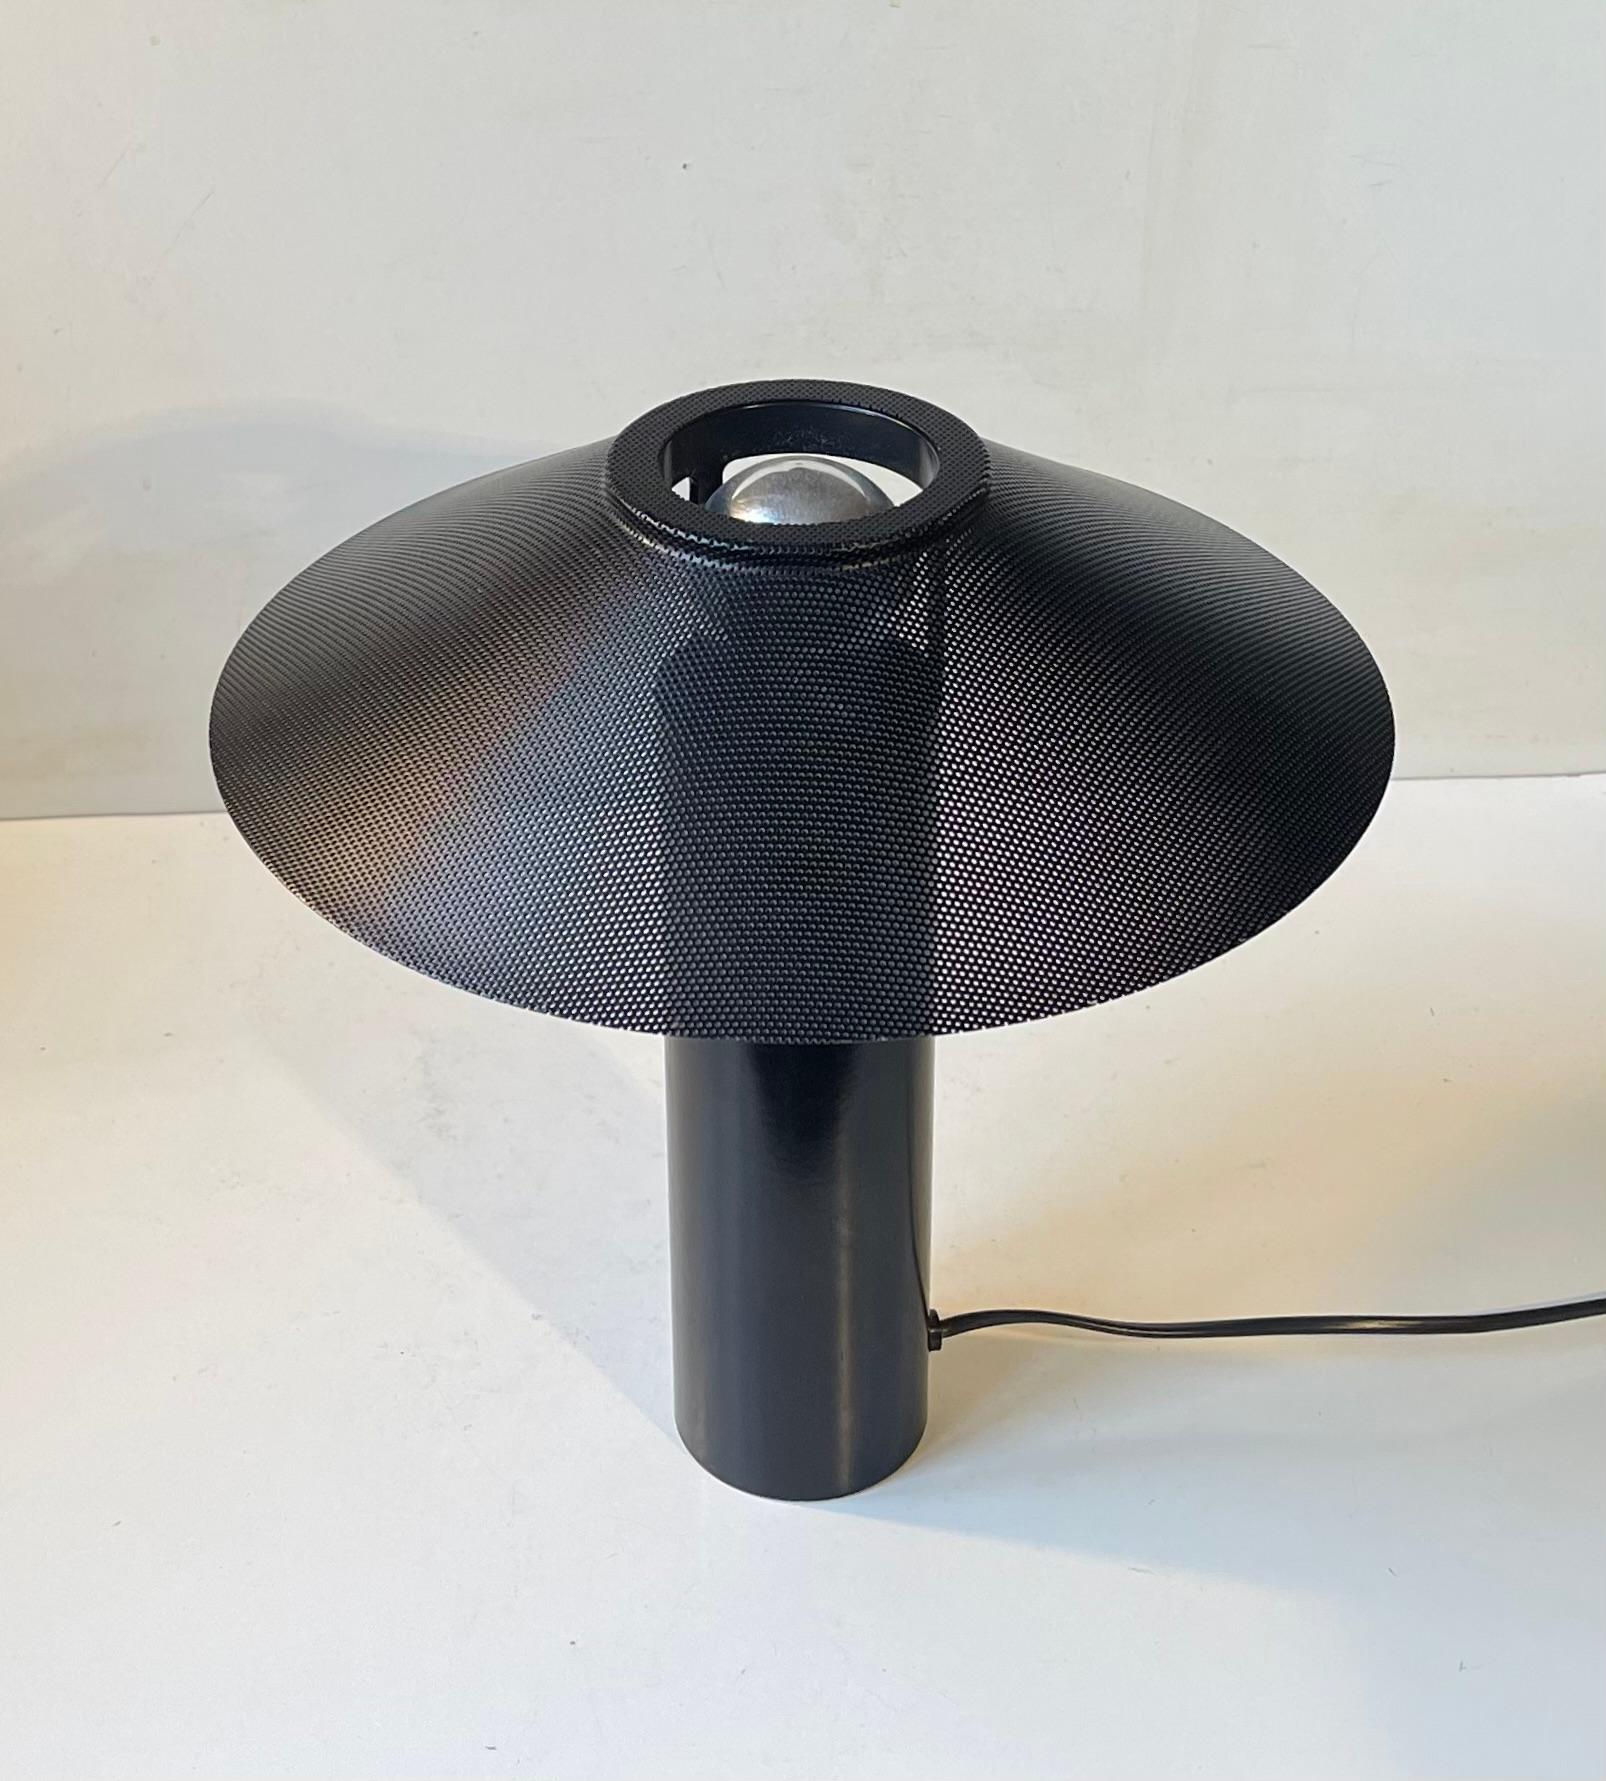 Cette rare lampe de table moderniste minimaliste a été conçue par Hans Schwazer dans les années 1970. Elle ressemble beaucoup à la lampe de table Riscio de Joe Colombo pour SEM Luci. Mais il s'agit d'un produit danois appelé 